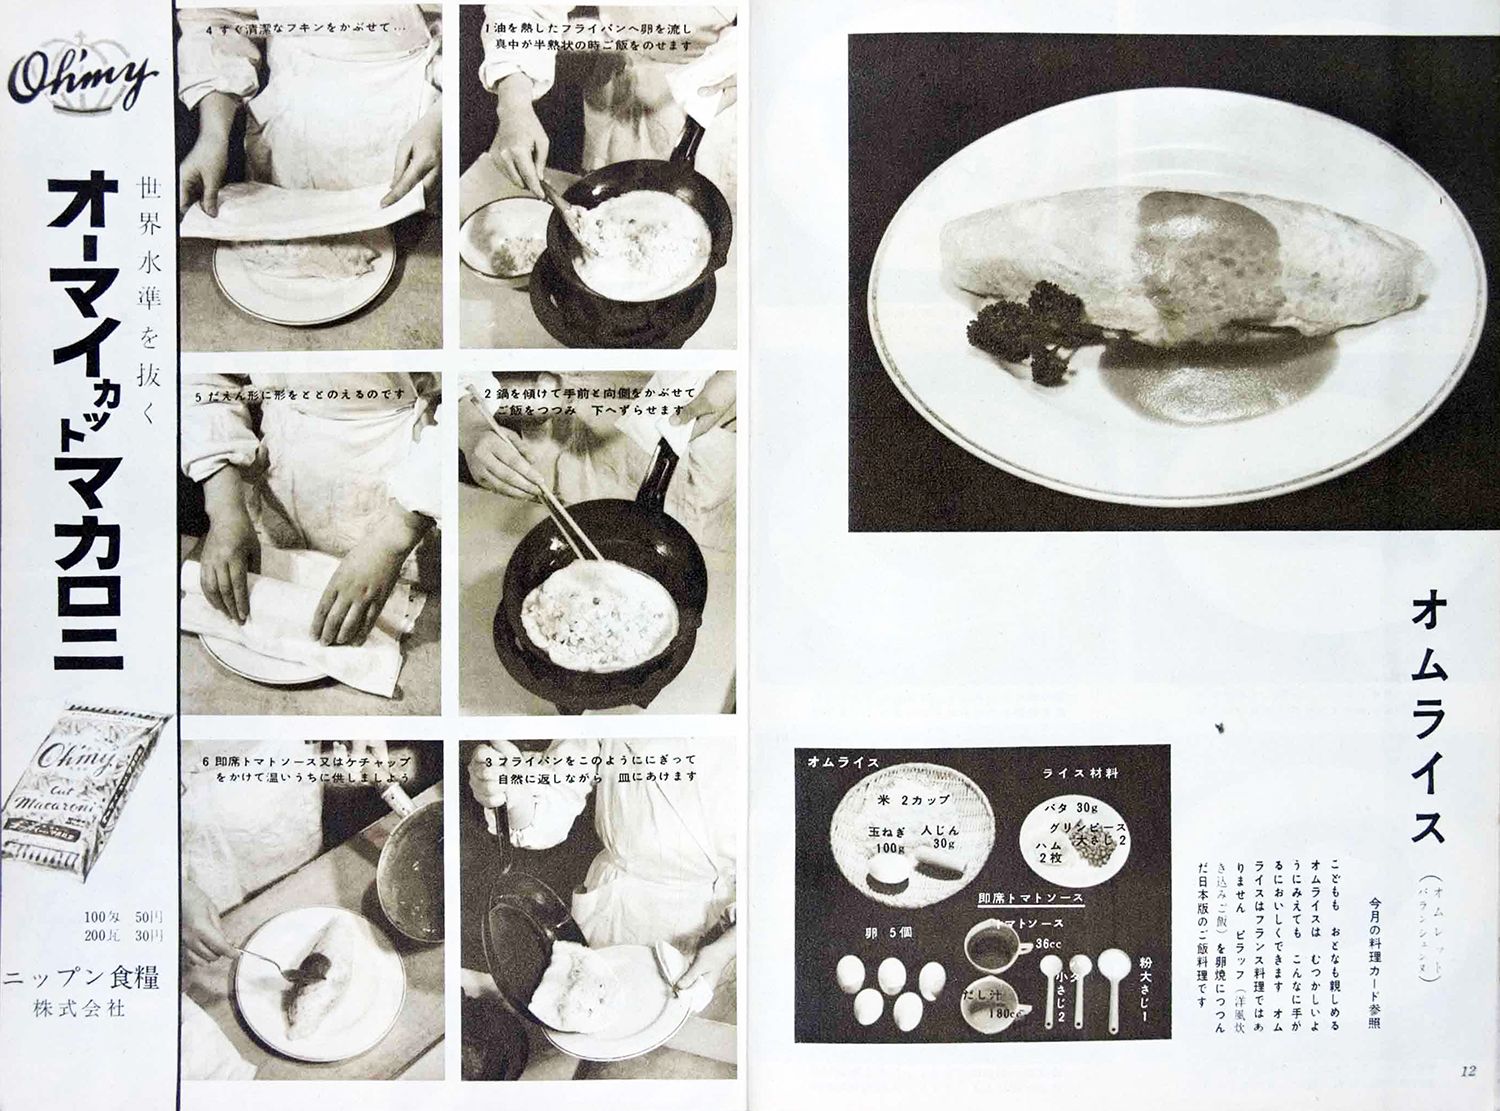 昭和31年 家庭のオムライスに入っていたご飯は 食の安全 Jbpress